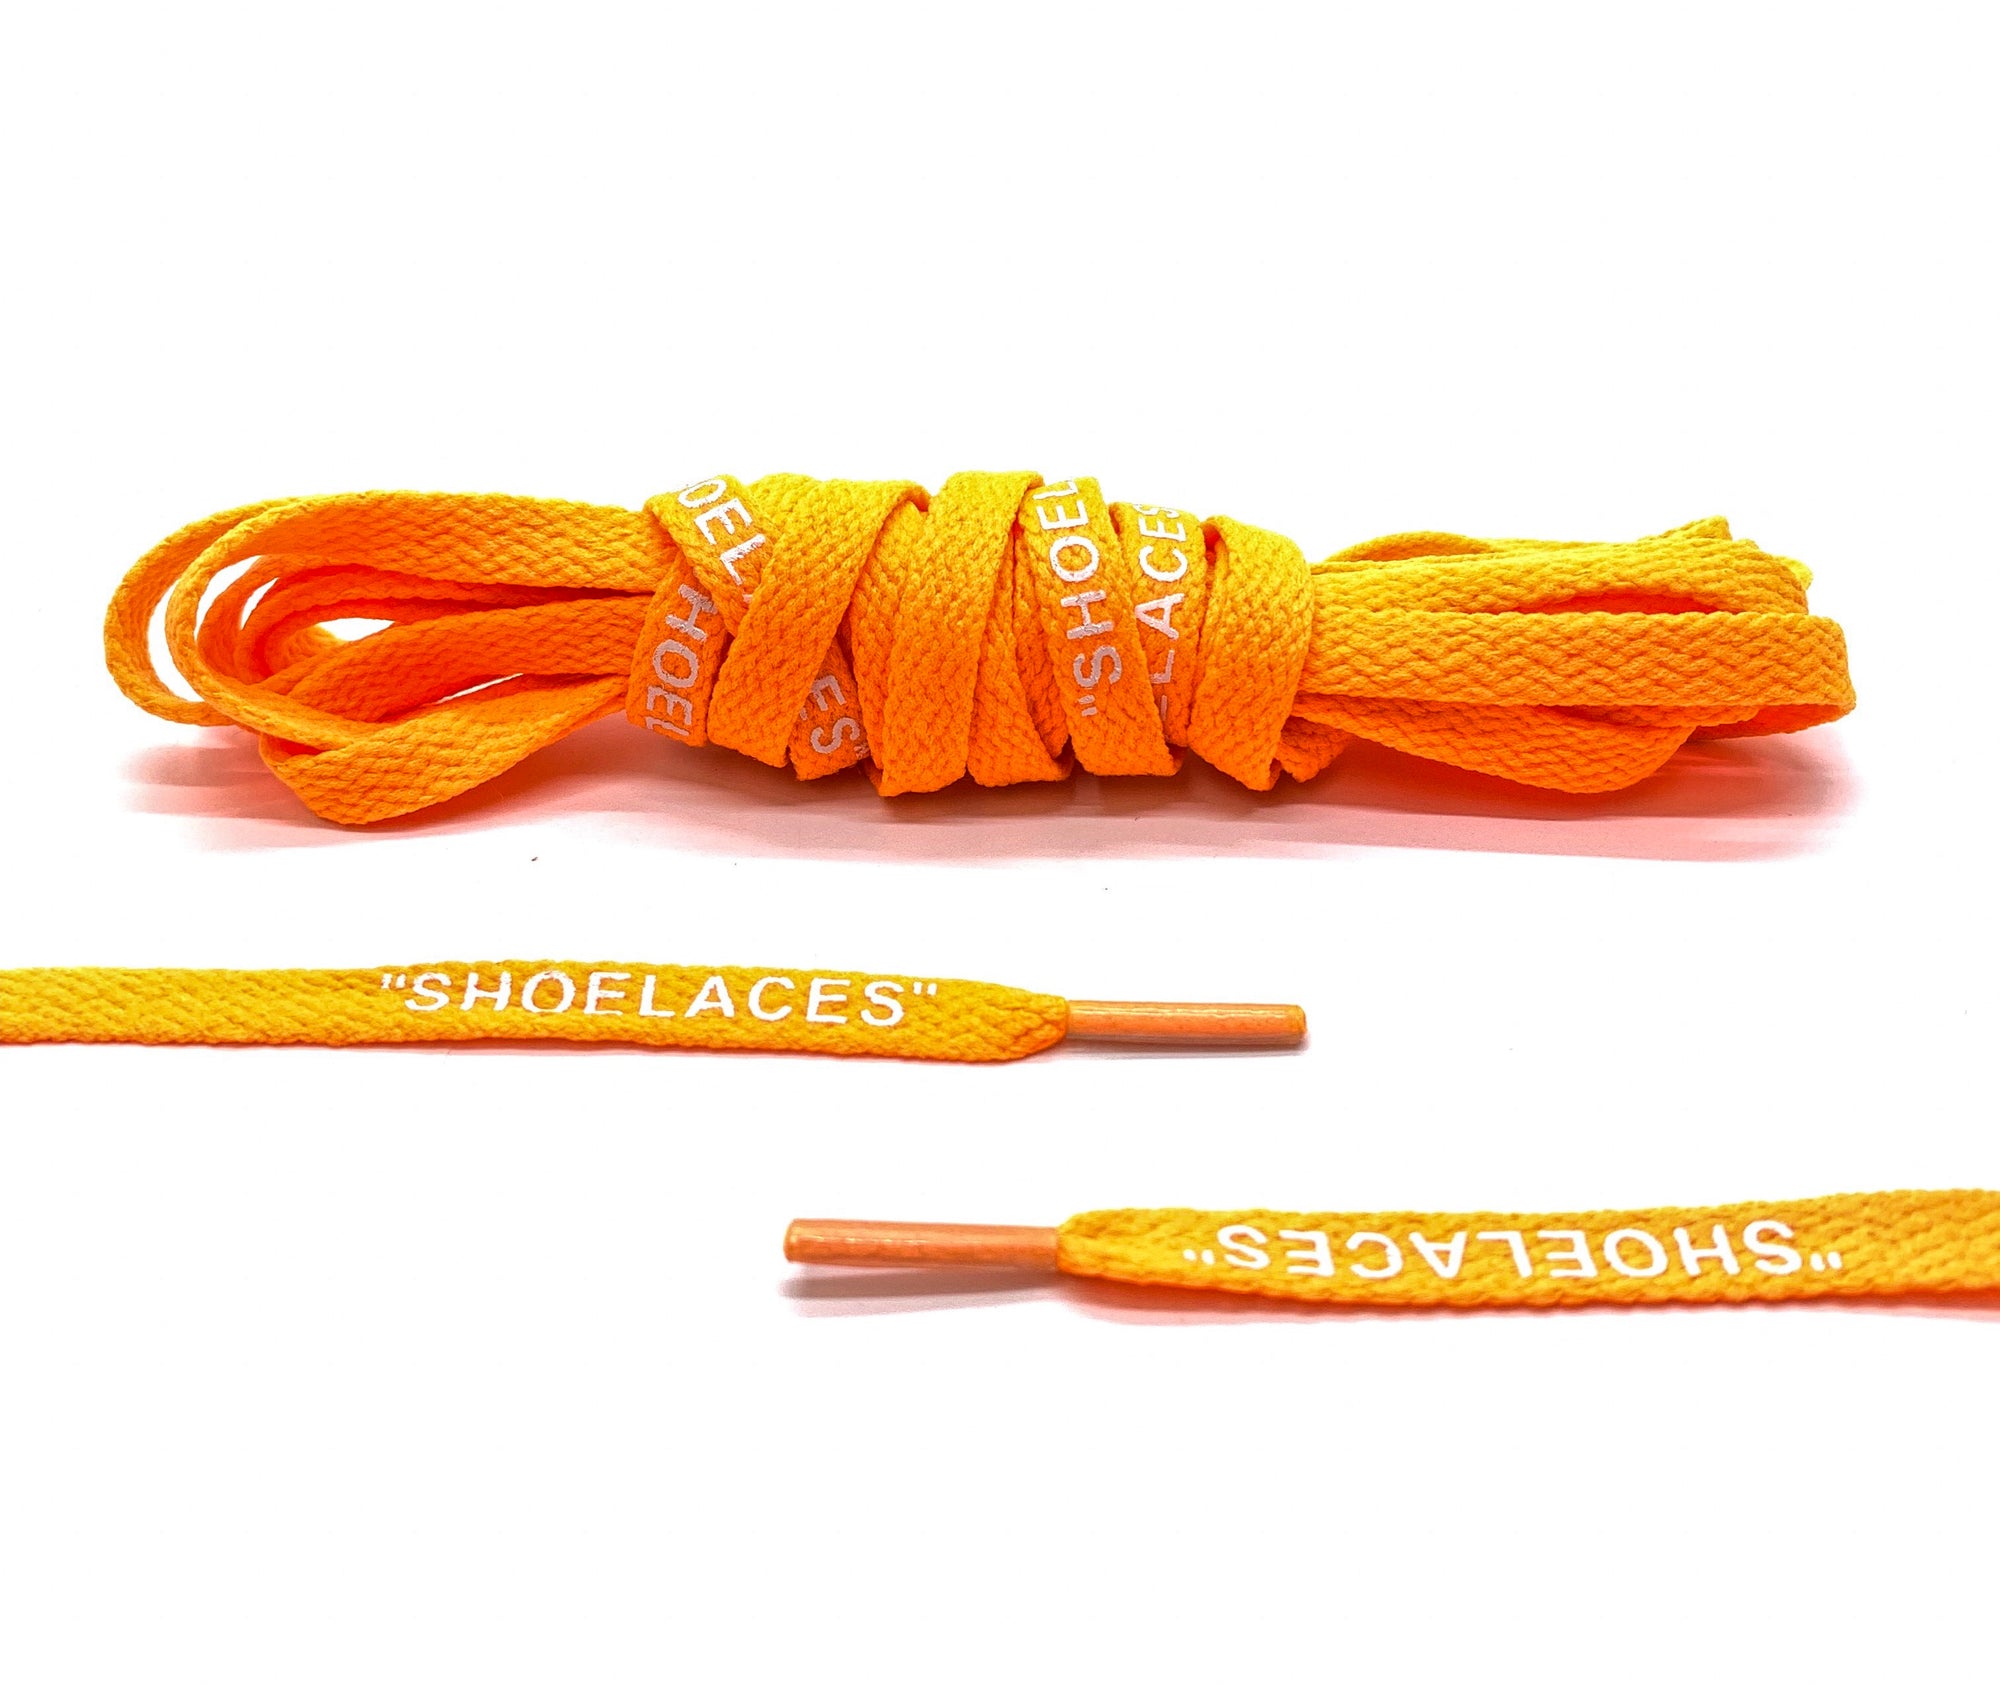 Neon Orange Off-White "SHOE LACES" Laces - Belaced